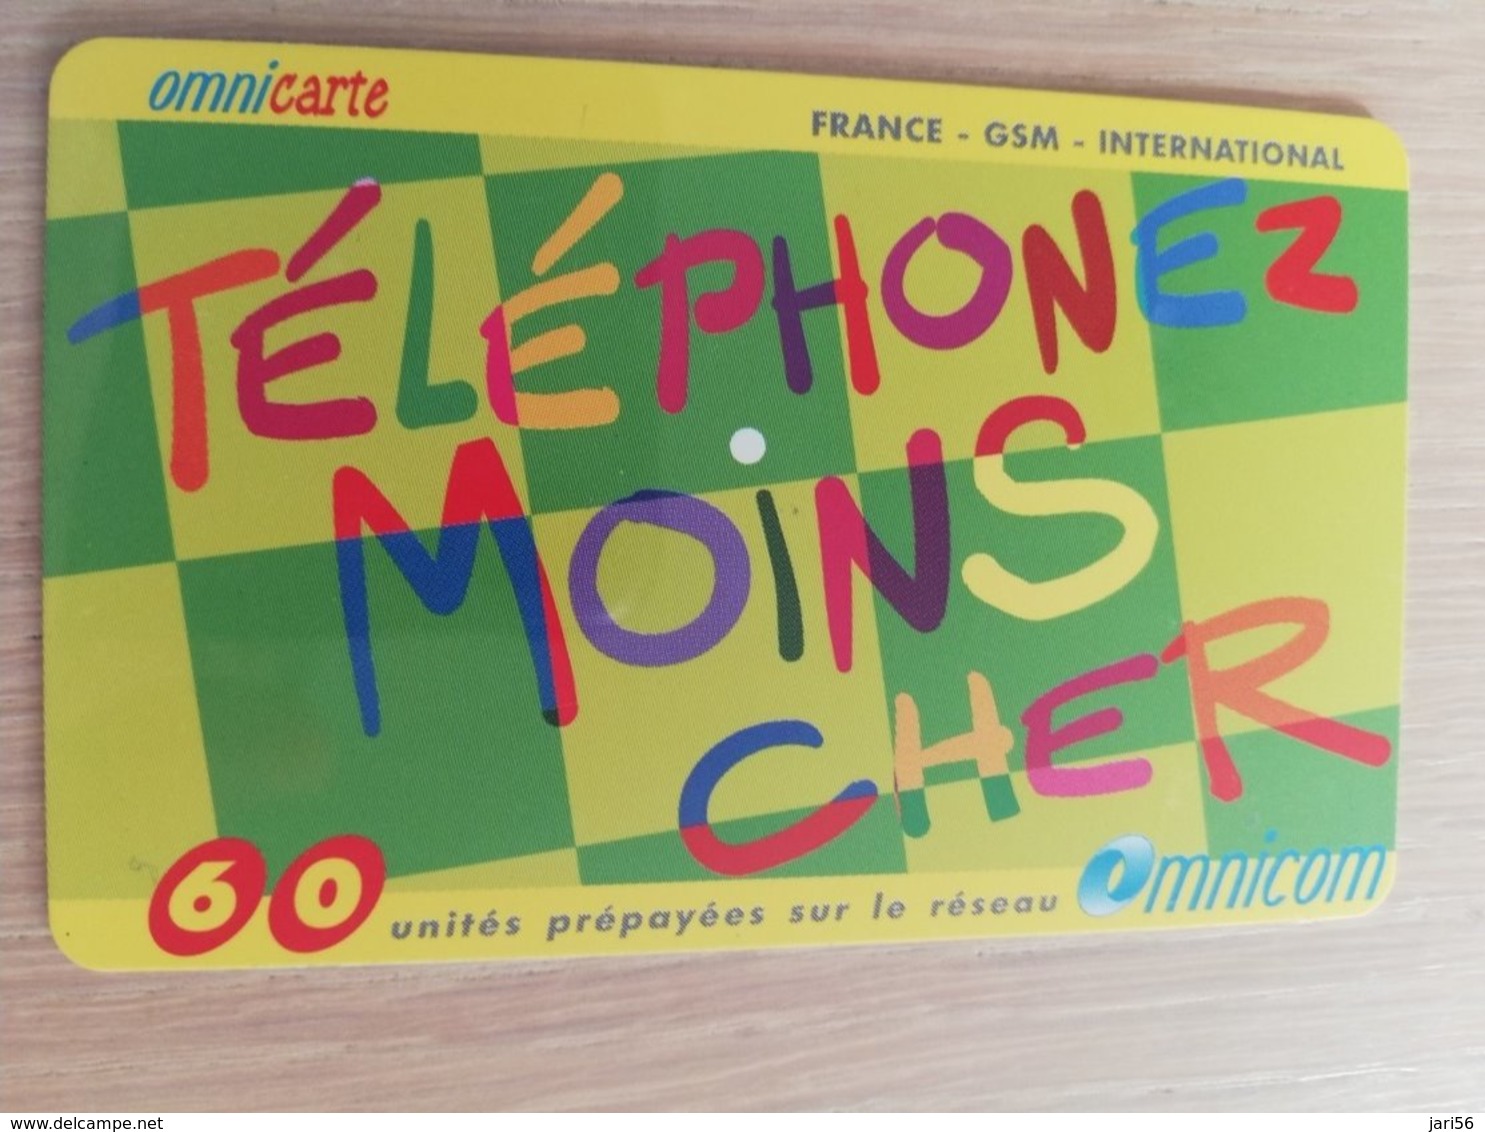 FRANCE/FRANKRIJK  OMNICARTE TELEPHONE MOINS CHER 60 UNITS PREPAID  USED    ** 1510** - Voorafbetaalde Kaarten: Gsm